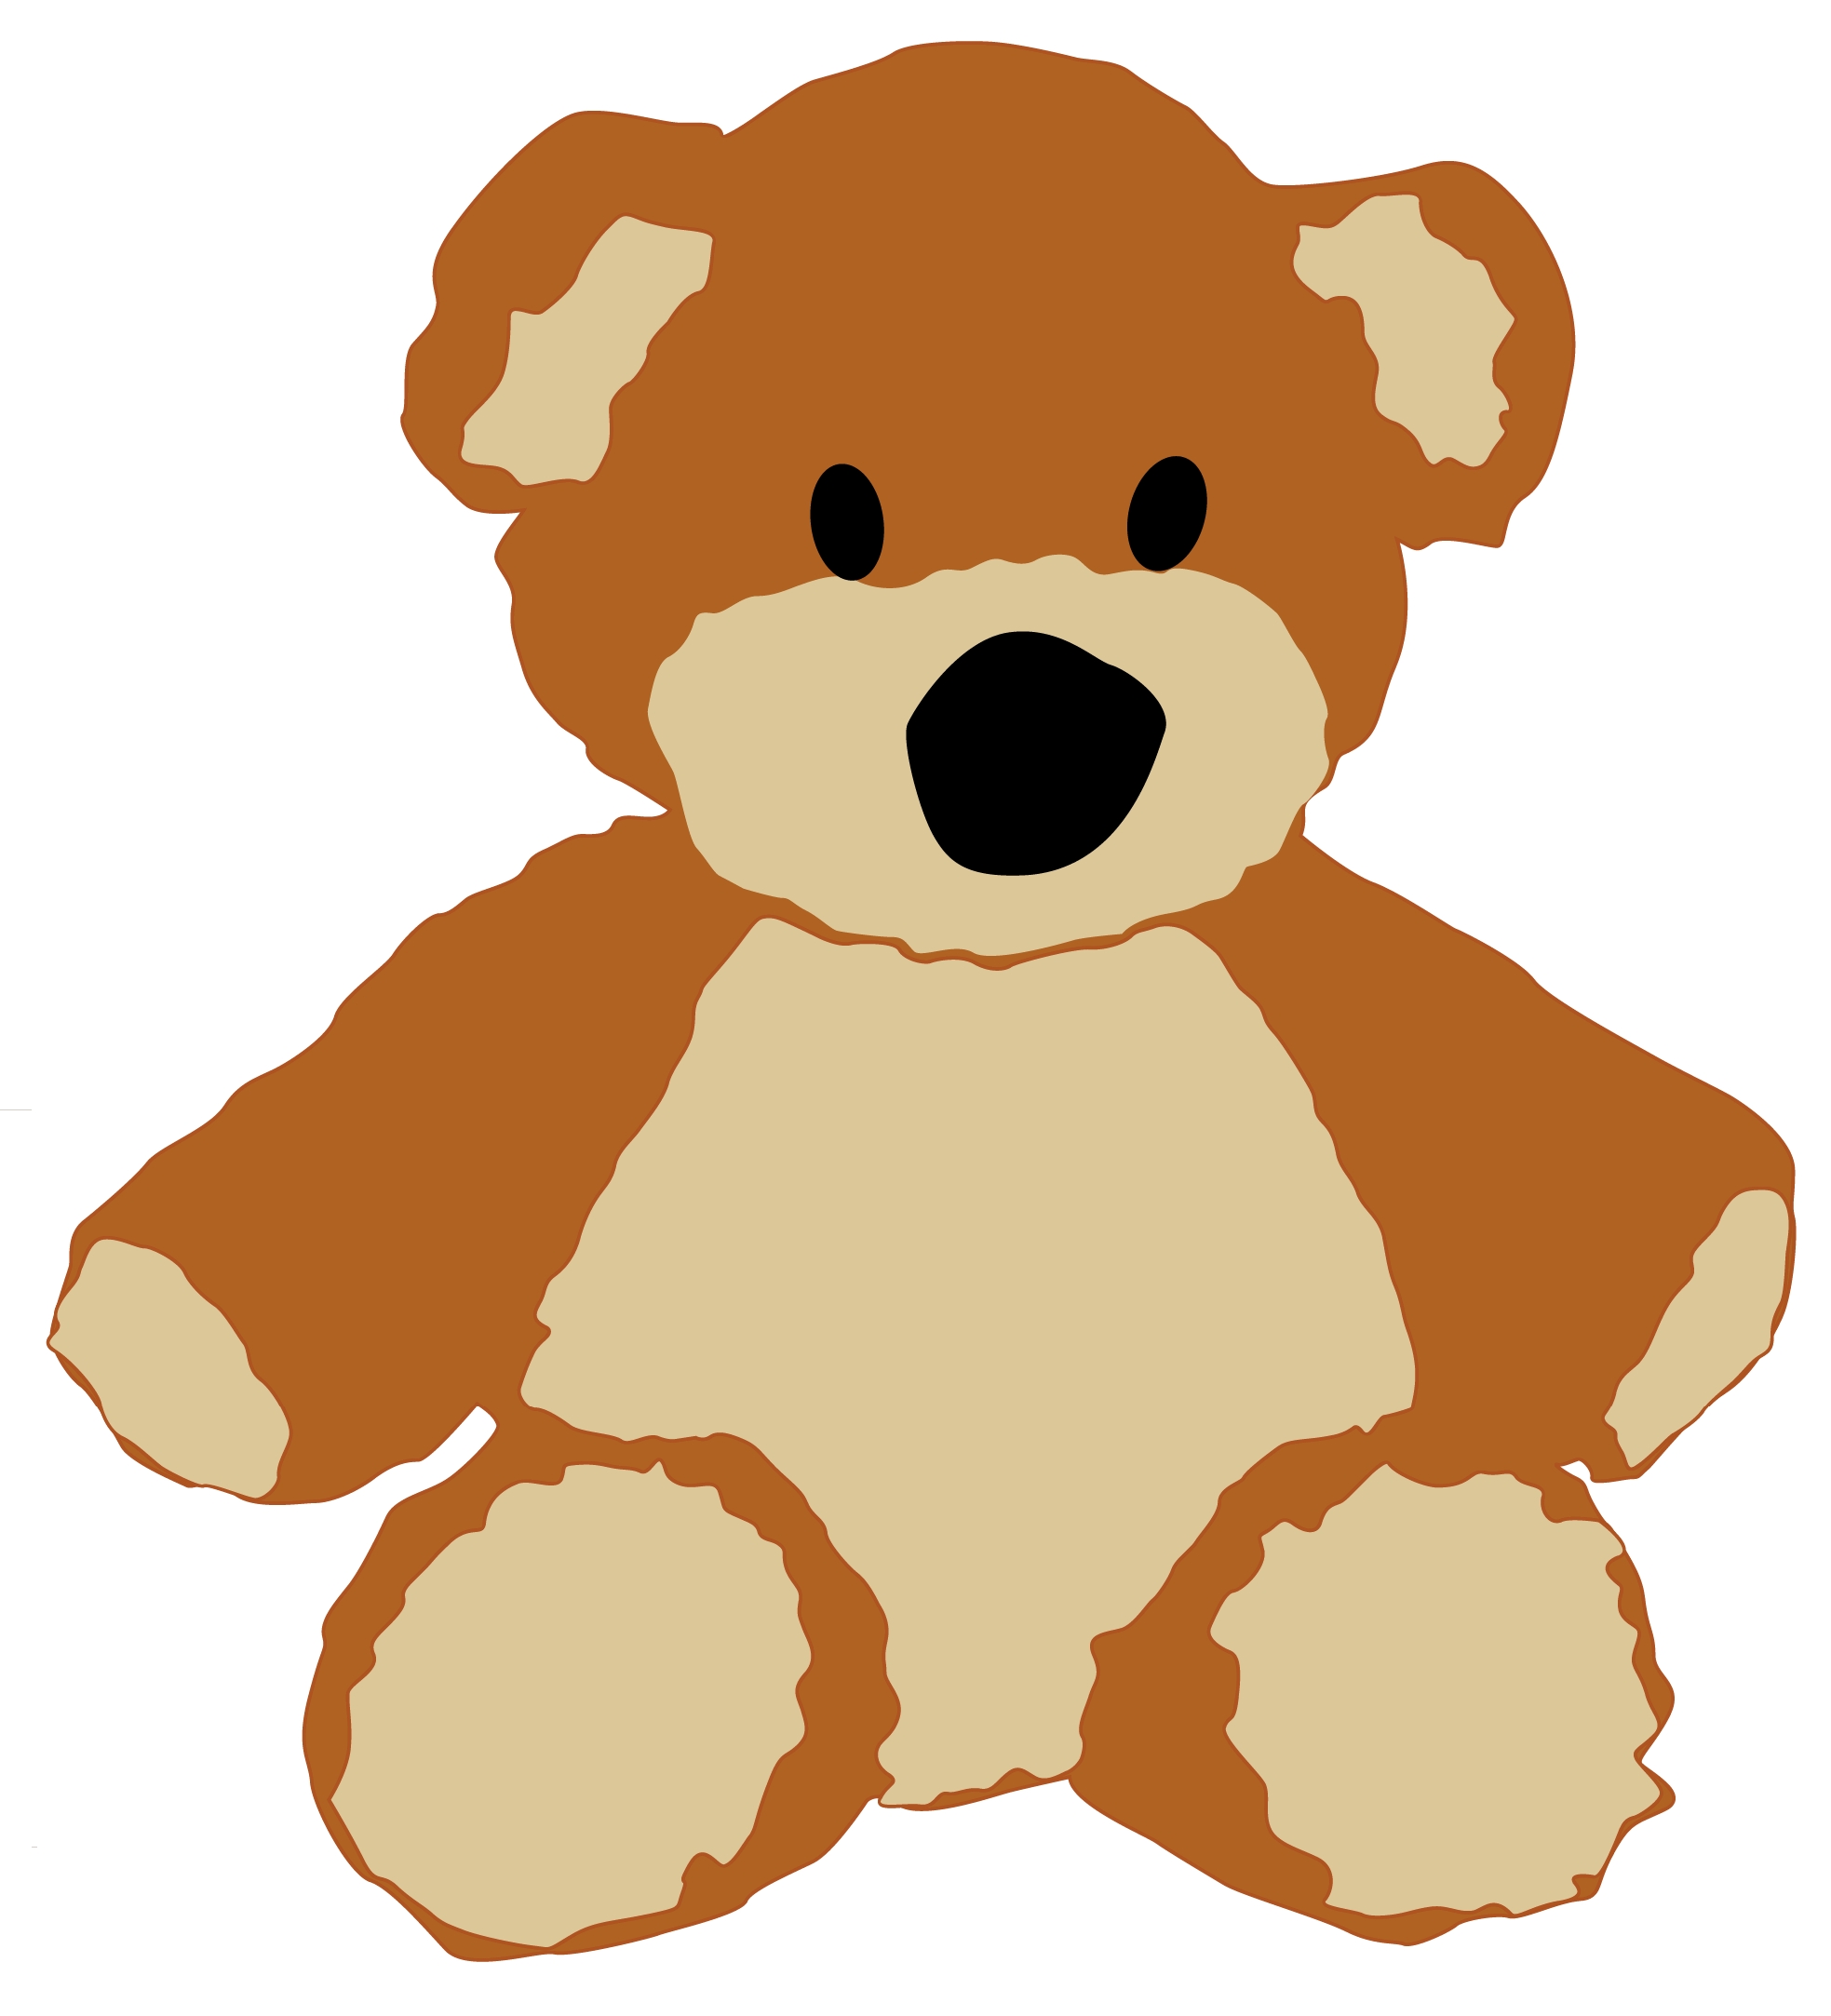 Teddy bear clip art clipartio - Teddy Bears Clipart